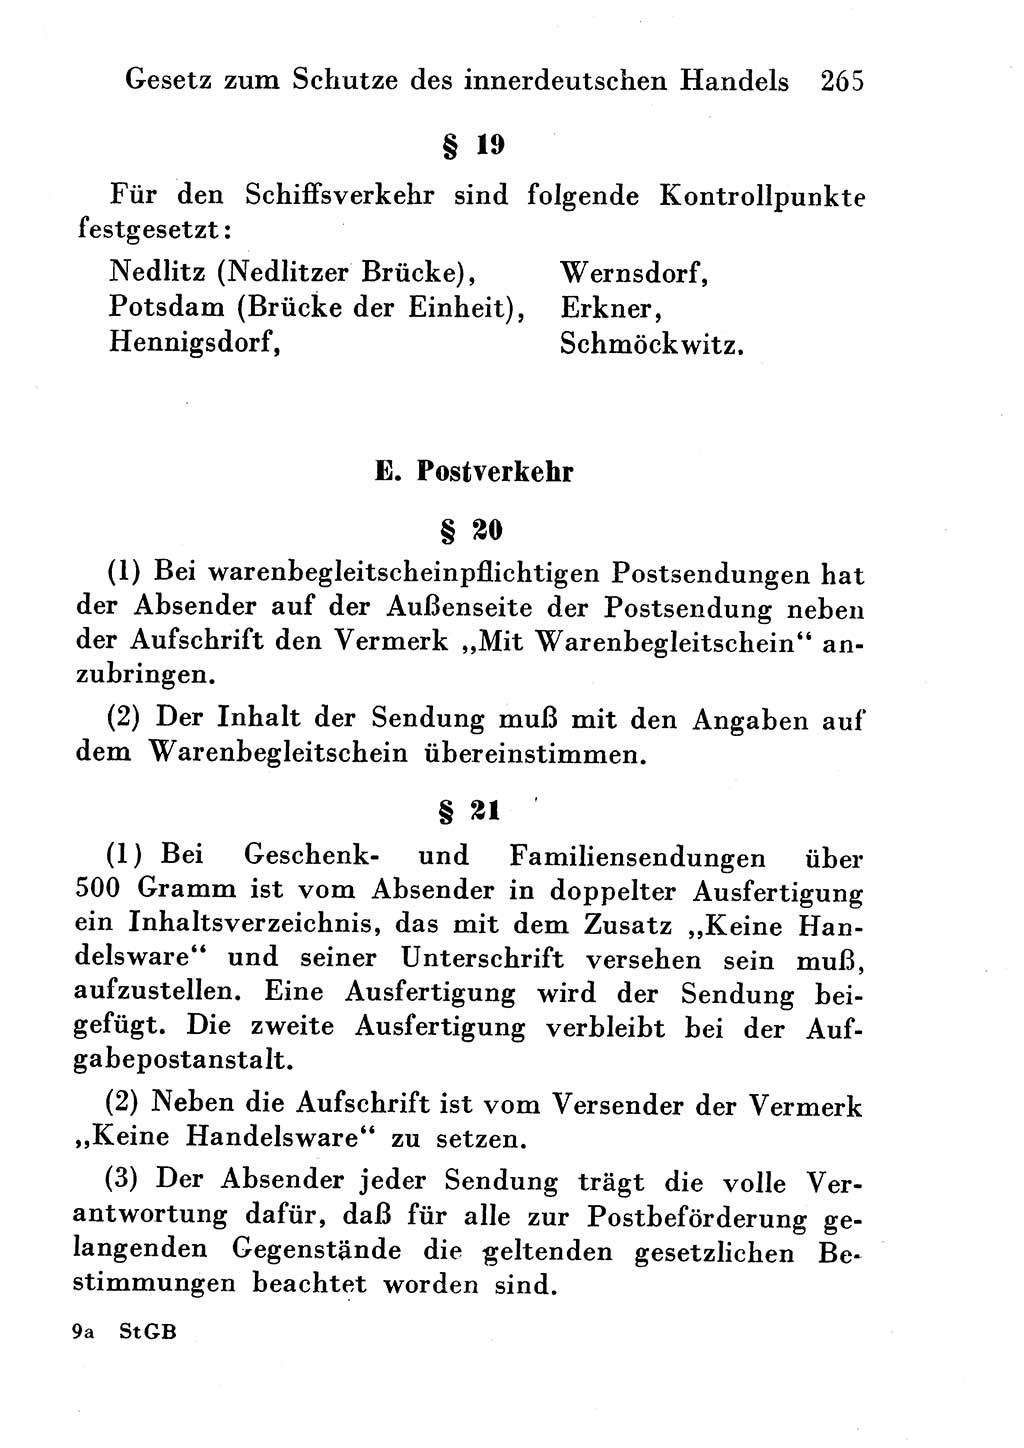 Strafgesetzbuch (StGB) und andere Strafgesetze [Deutsche Demokratische Republik (DDR)] 1954, Seite 265 (StGB Strafges. DDR 1954, S. 265)